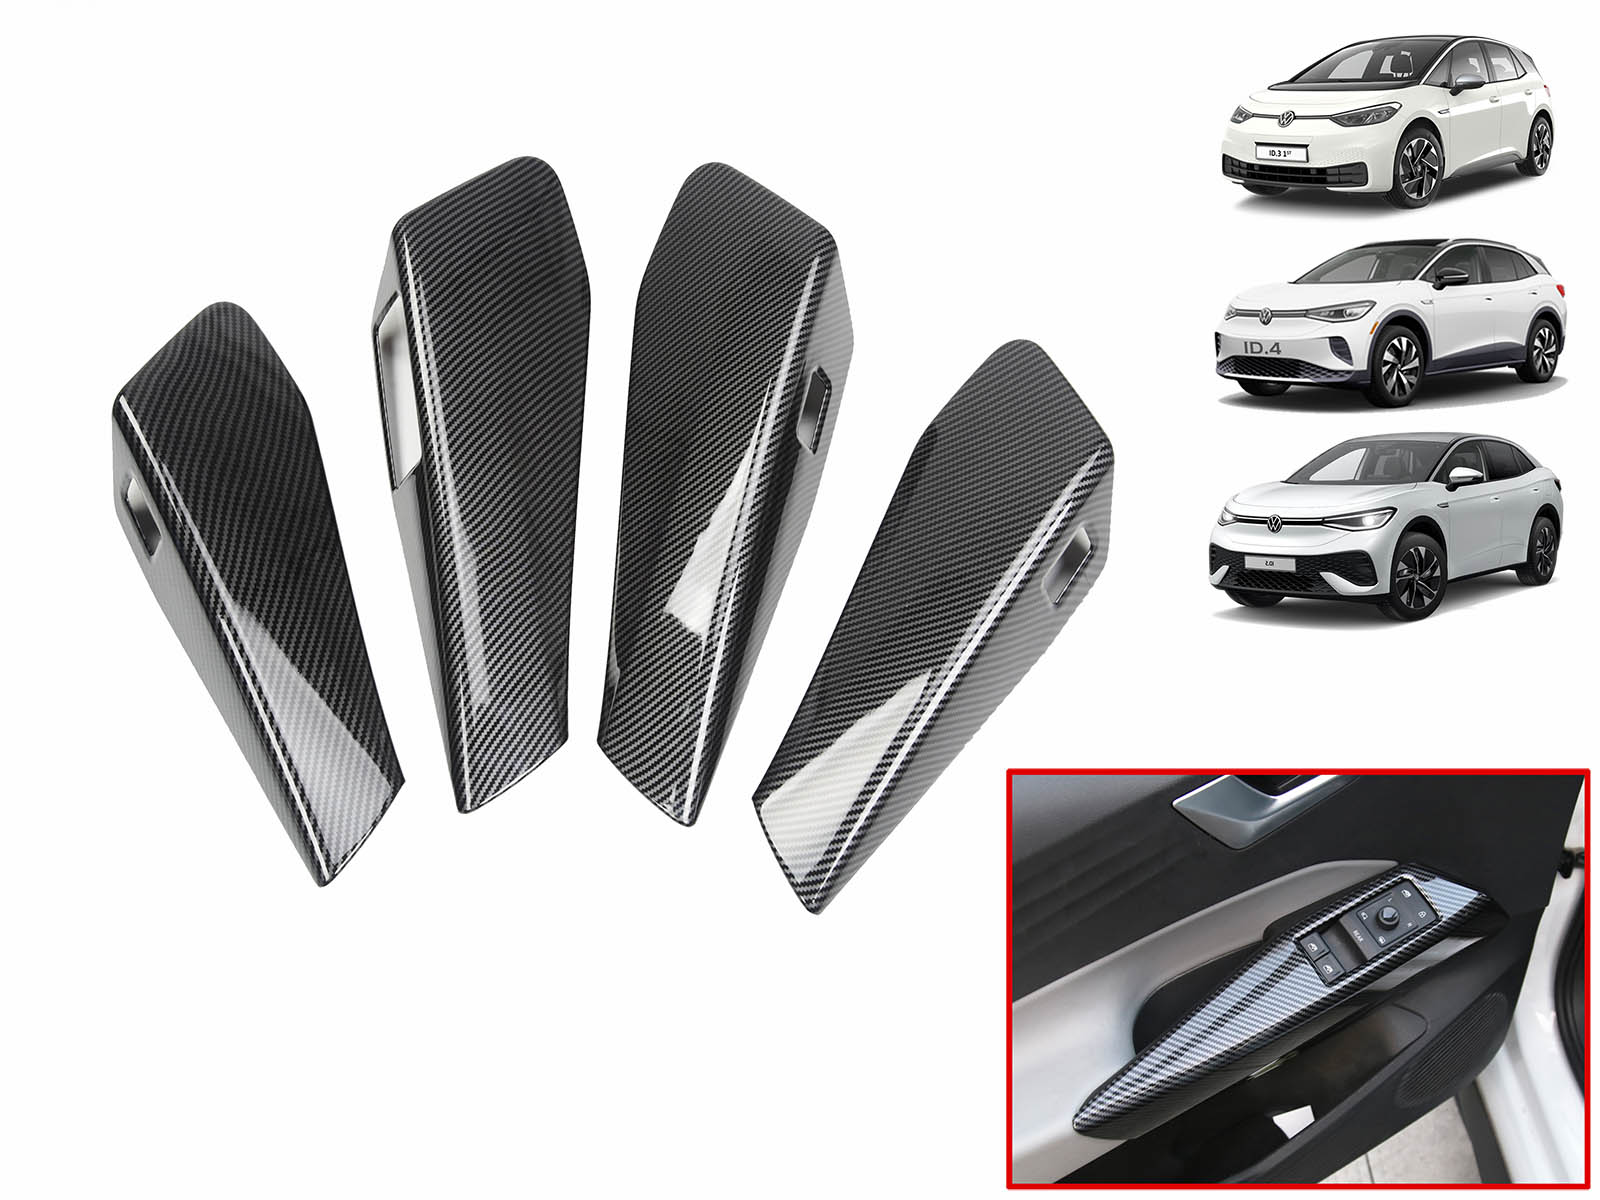 VW ID.3,ID.4,ID.5 : UK RHD, Conduite à droite, Jeu de couvercles de poignées de portes intérieures (ABS + Revêtement, 4 pièces) - Torque Alliance